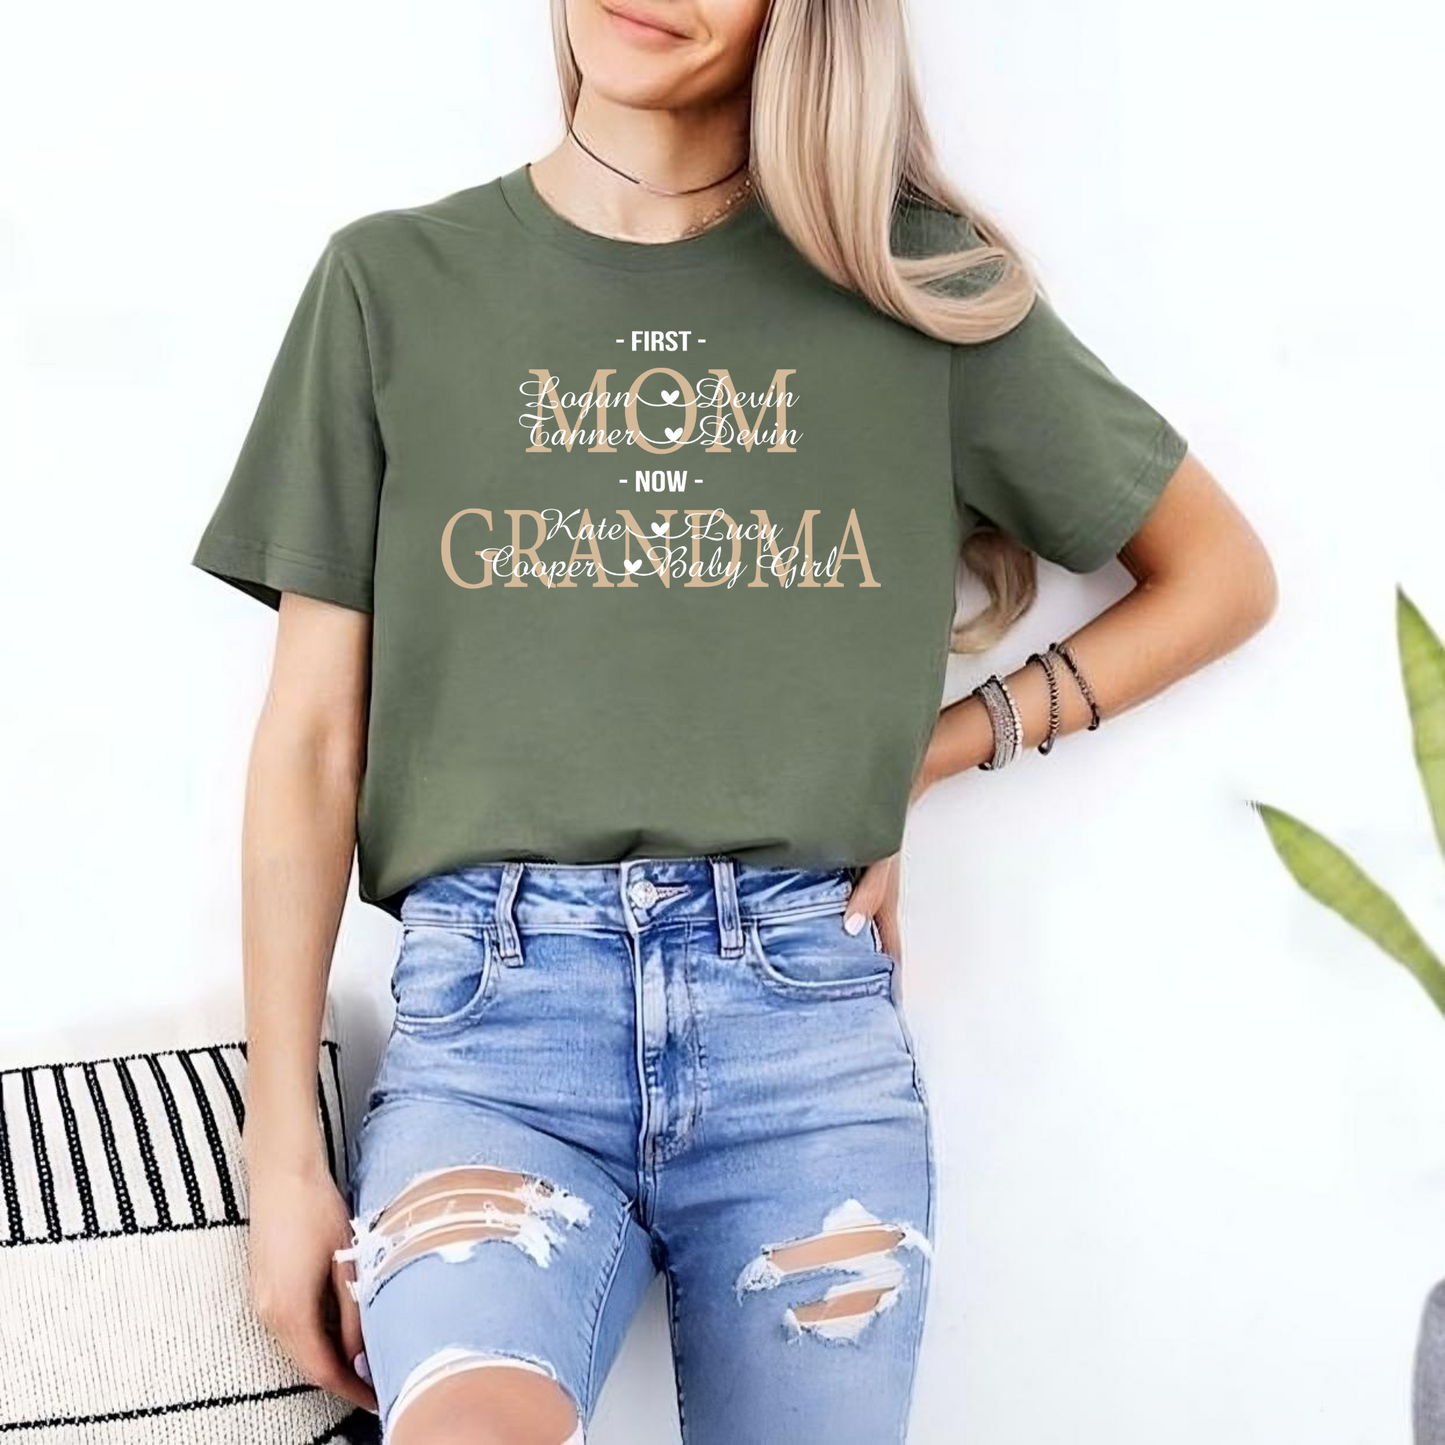 Personalisiertes Mama und Oma T-Shirt - Geschenk zum Muttertag